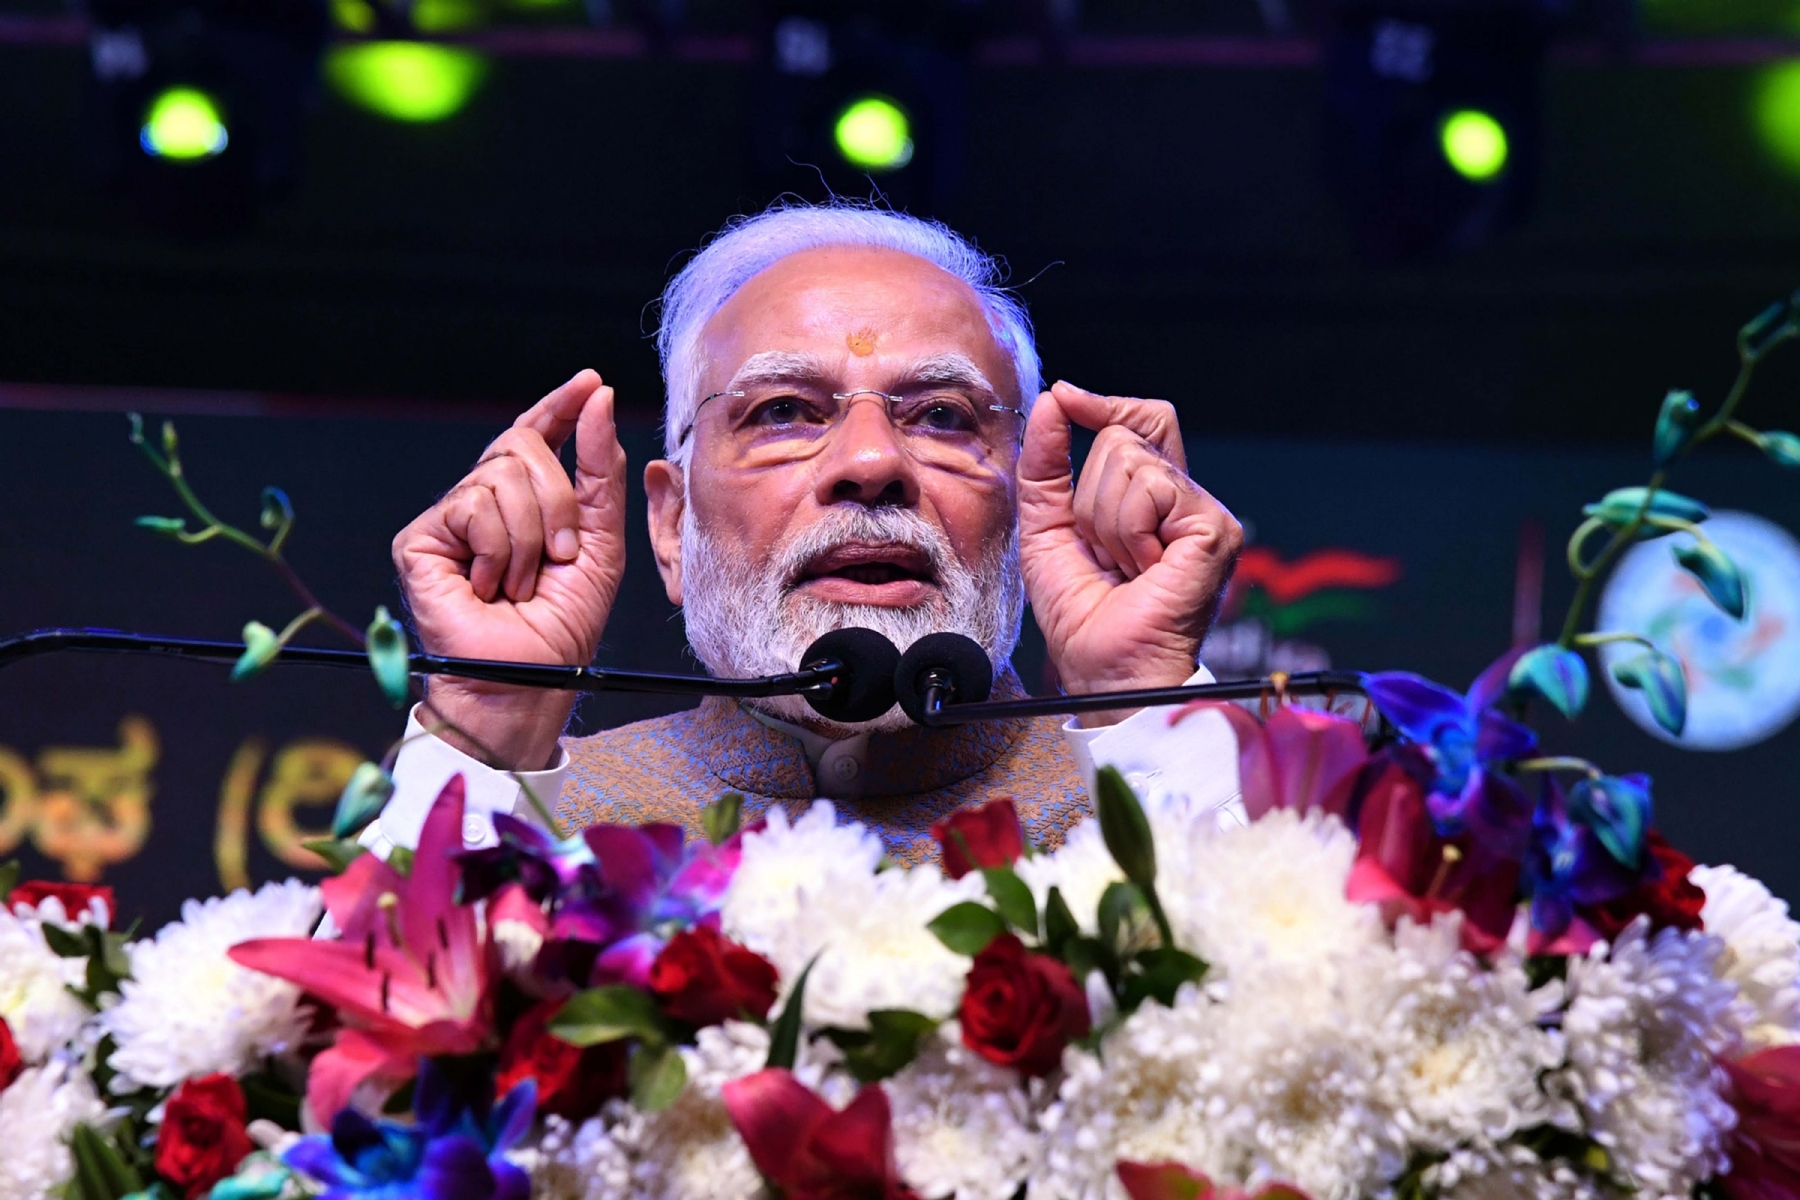 प्रधानमंत्री नरेंद्र मोदी ने दिल्ली में बरिसू कन्नड़ दिमदिमावा  सांस्कृतिक उत्सव को संबोधित करते हुए। यह कर्नाटक की ज्वलंत संस्कृति का जश्न मनाते कलाकार